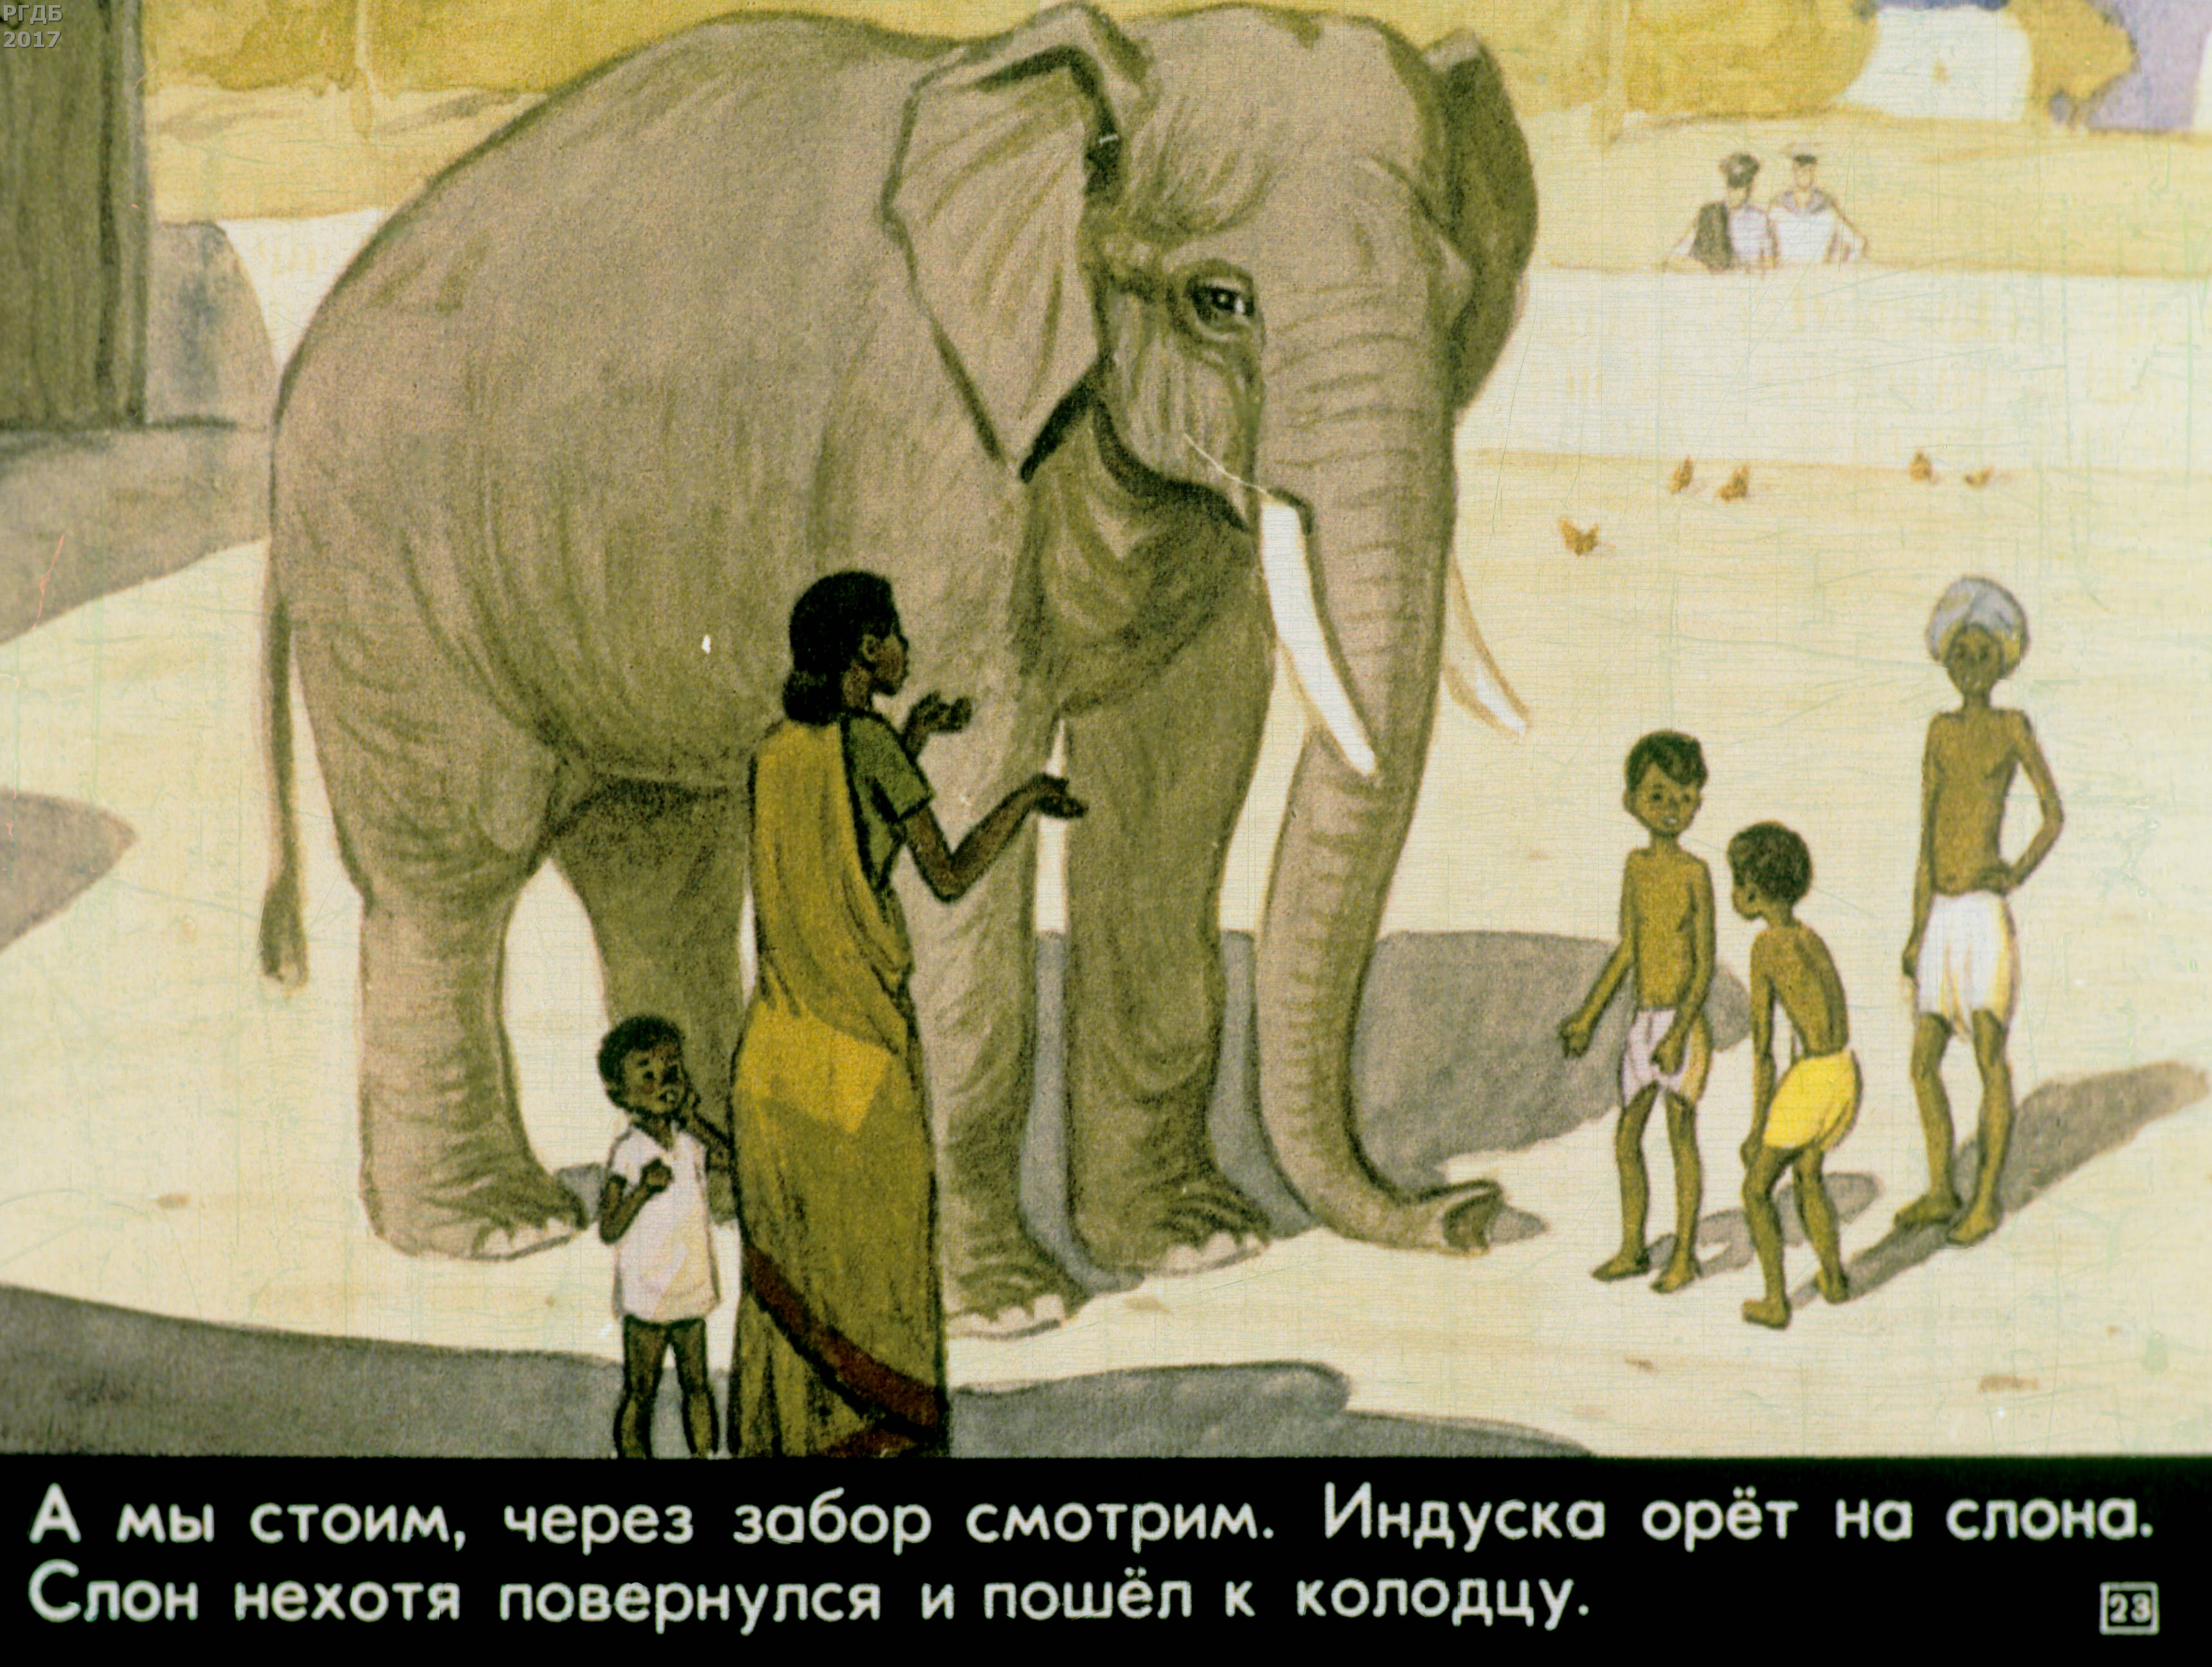 Читать про слона. Рассказ про слона Житков. Рассказ б.с. Житкова «про слона». Рассказ Житкова про слона.